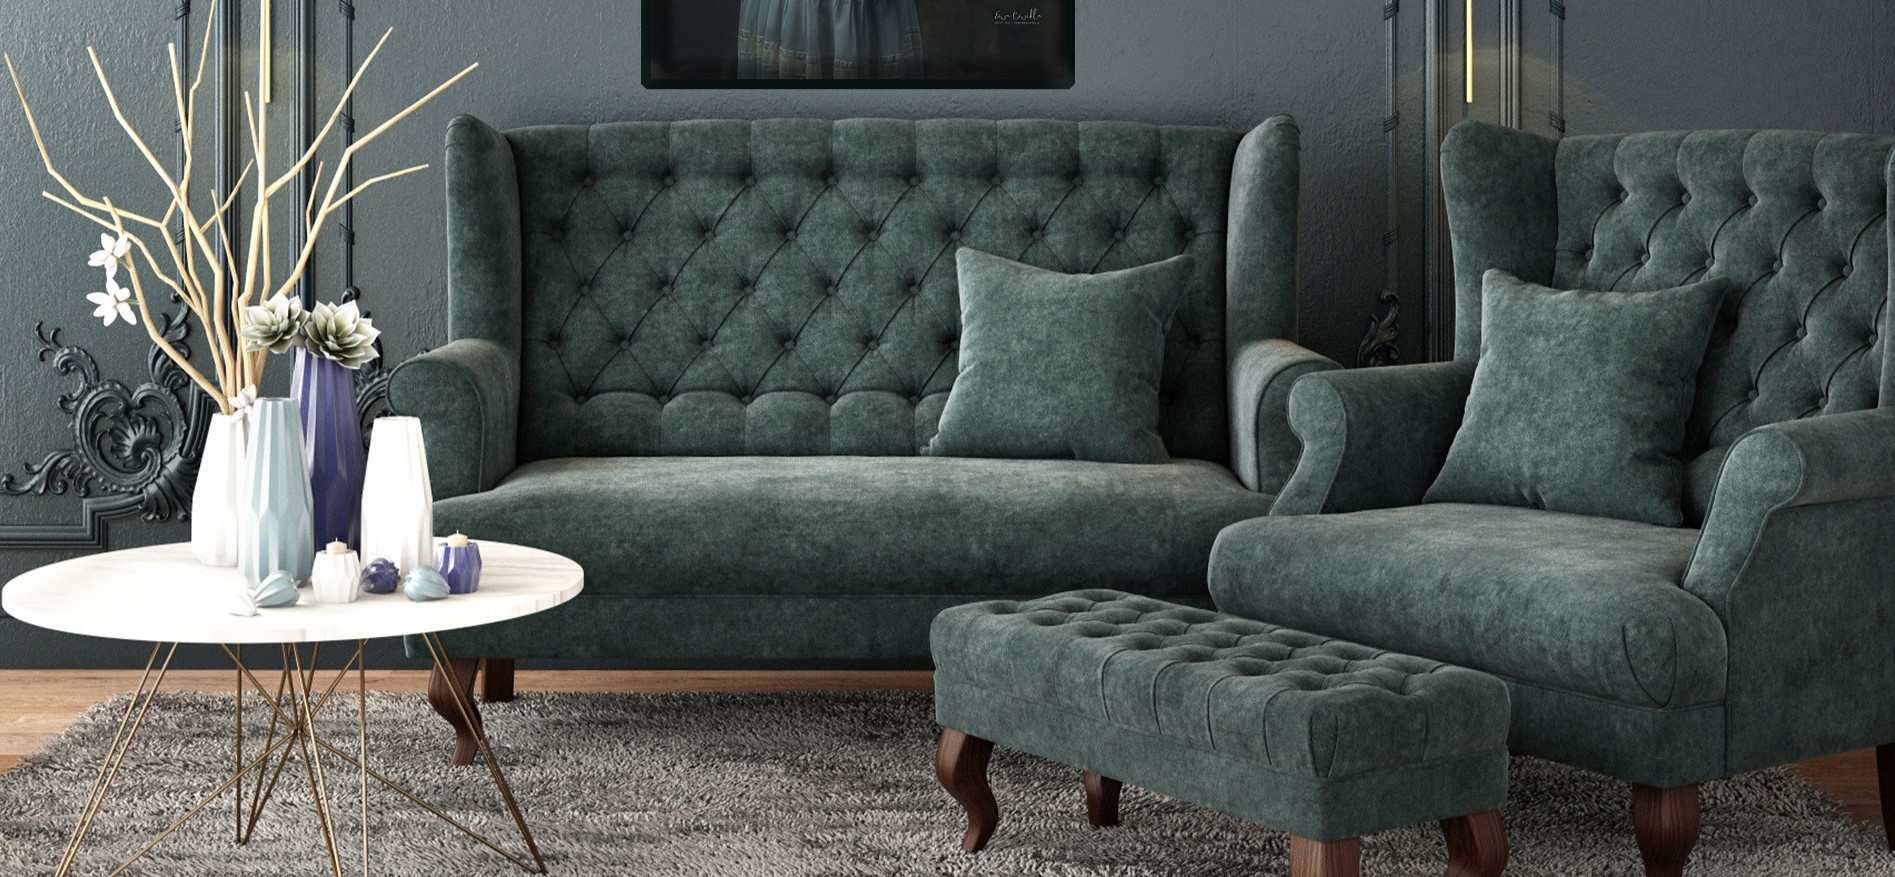 С помощью интернета можно найти кресло, диван и пуф для гостиной в одном цвете для